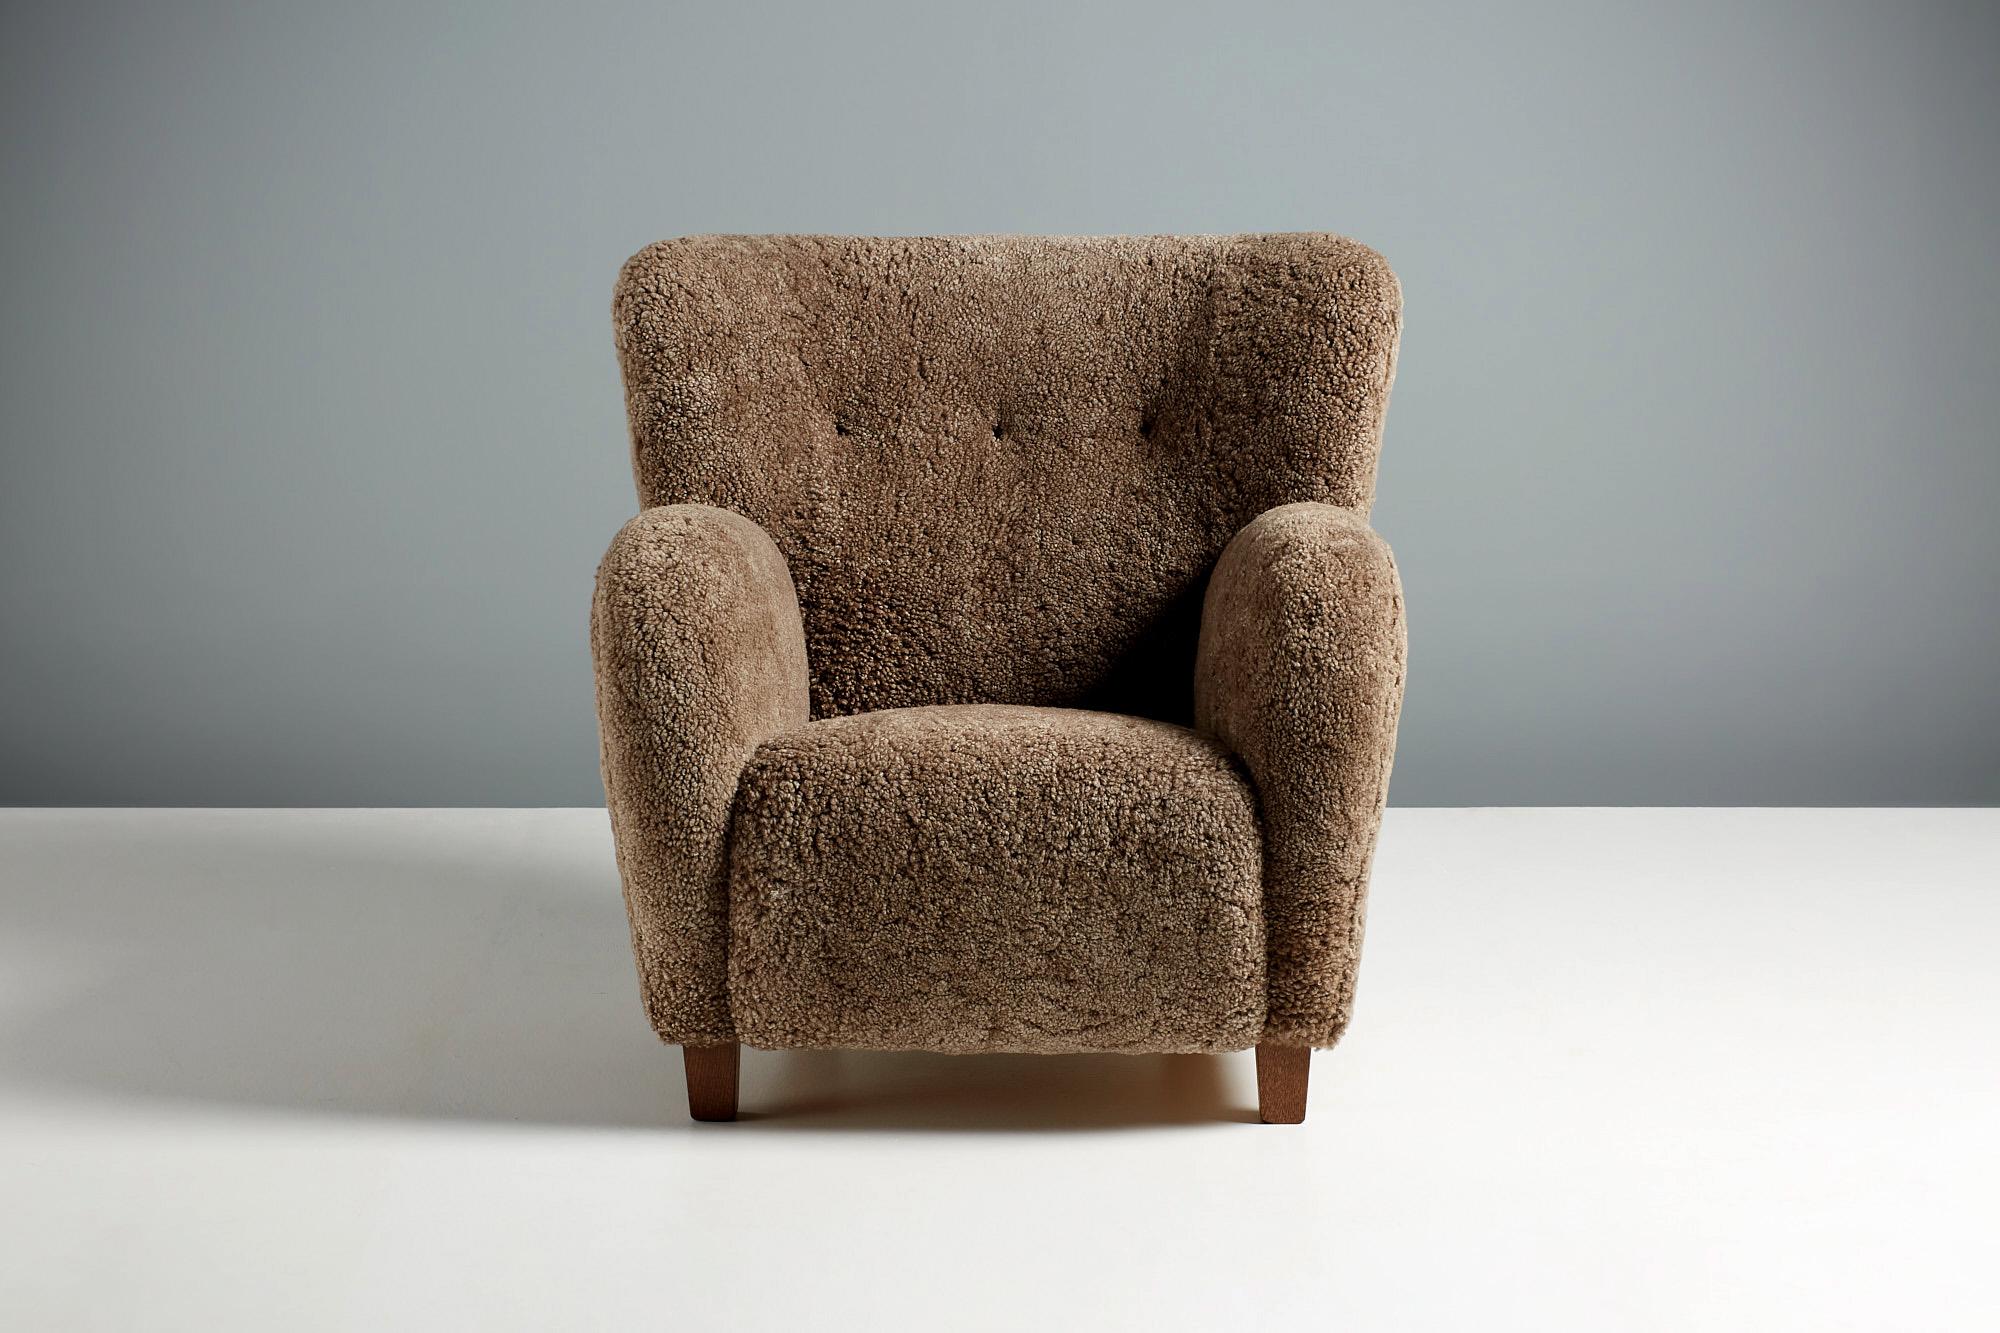 Fauteuil et ottoman Dagmar Karu en shearling marron avec des pieds en chêne fumés. 

Ces fauteuils sont fabriqués à la main dans nos ateliers en Angleterre. Les pieds de la chaise sont disponibles en chêne huilé, en chêne fumigé ou en noyer. Les